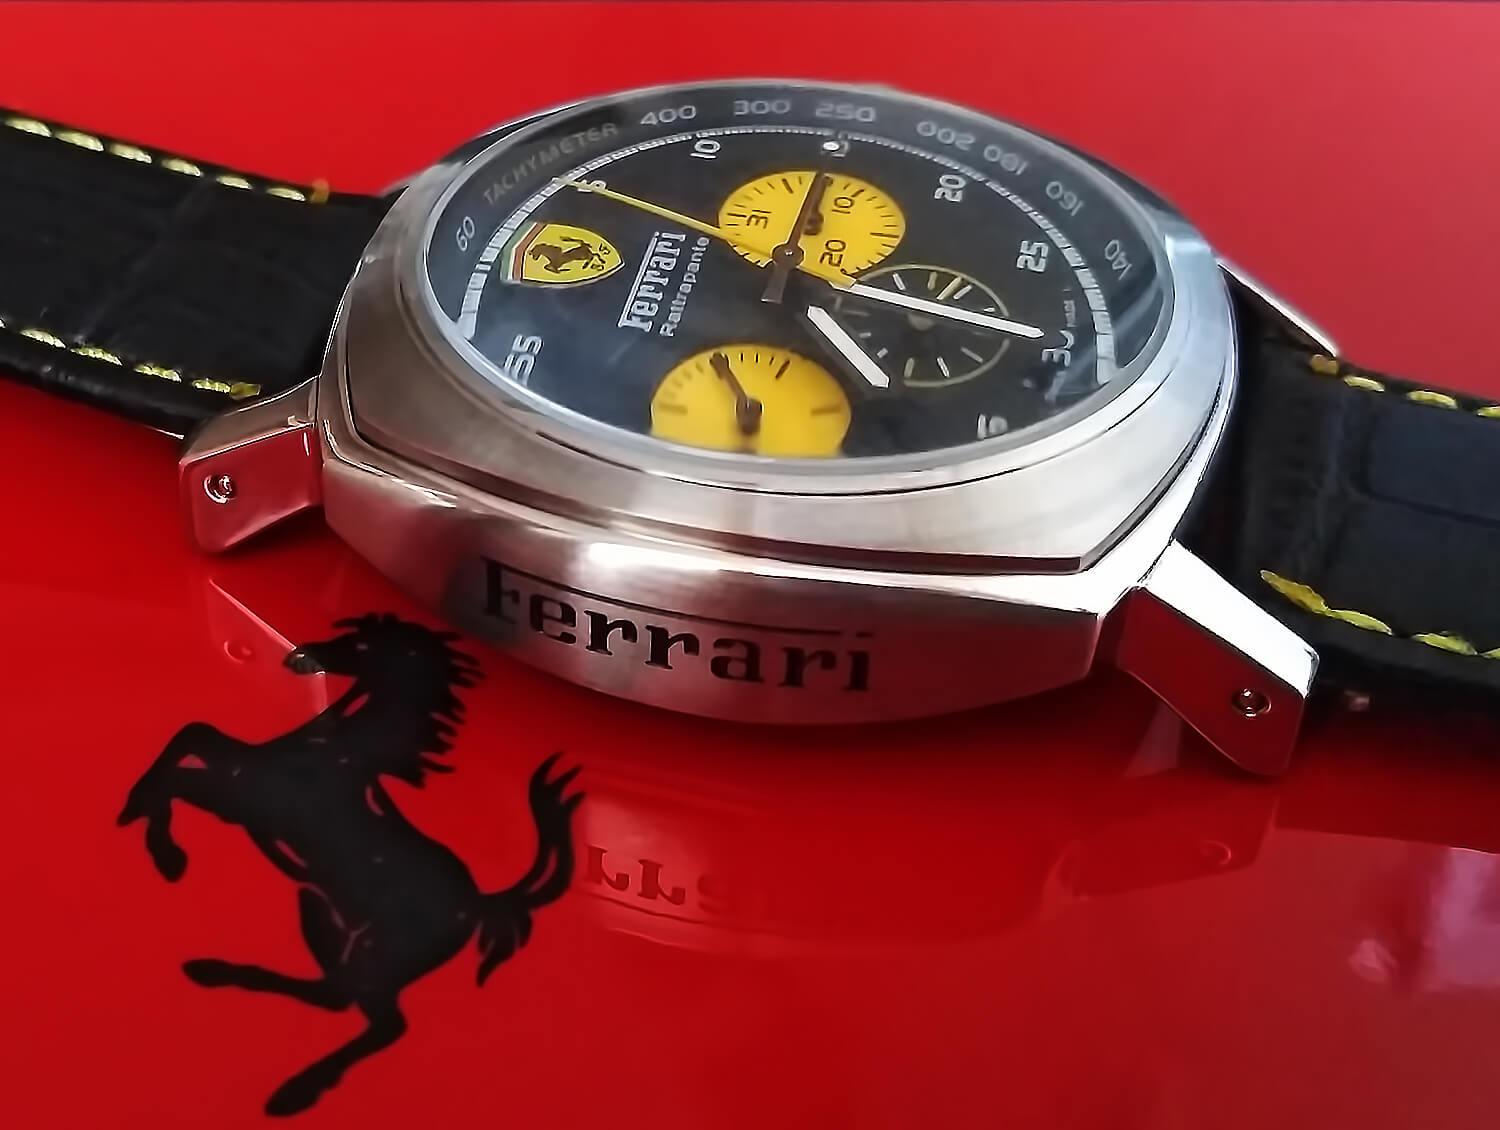 Дизайн реплики Panerai Ferrari в точности повторяет оригинал, включая наличие логотипа и имени бренда